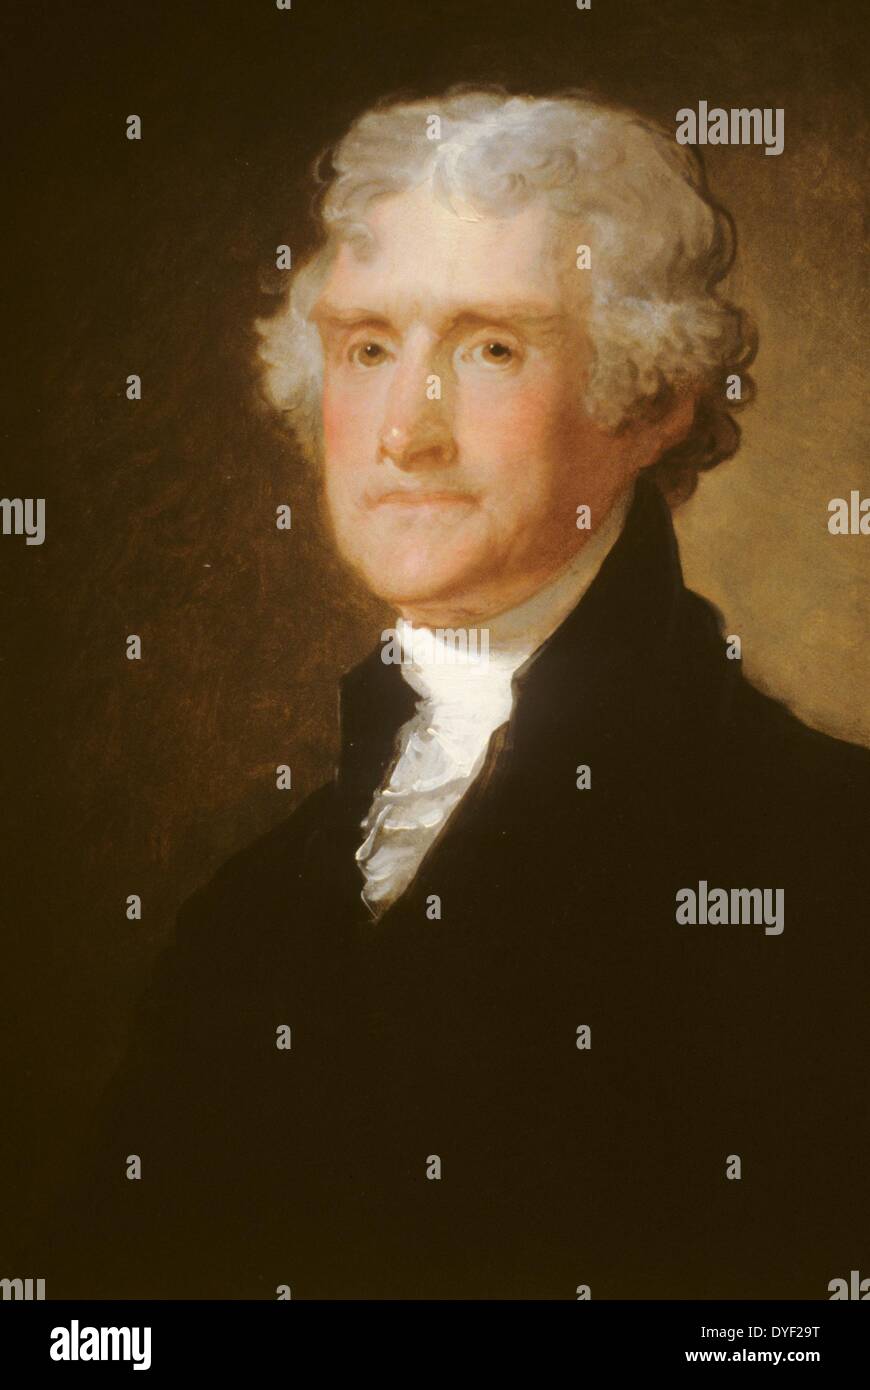 Portrait de Thomas Jefferson par Gilbert Stuart, qui était premier ministre de la République au début de portraitiste. Thomas Jefferson (13 avril 1743 - 4 juillet 1826) était un père fondateur, le principal auteur de la Déclaration d'indépendance (1776) et le troisième président des États-Unis (1801-1809). Banque D'Images